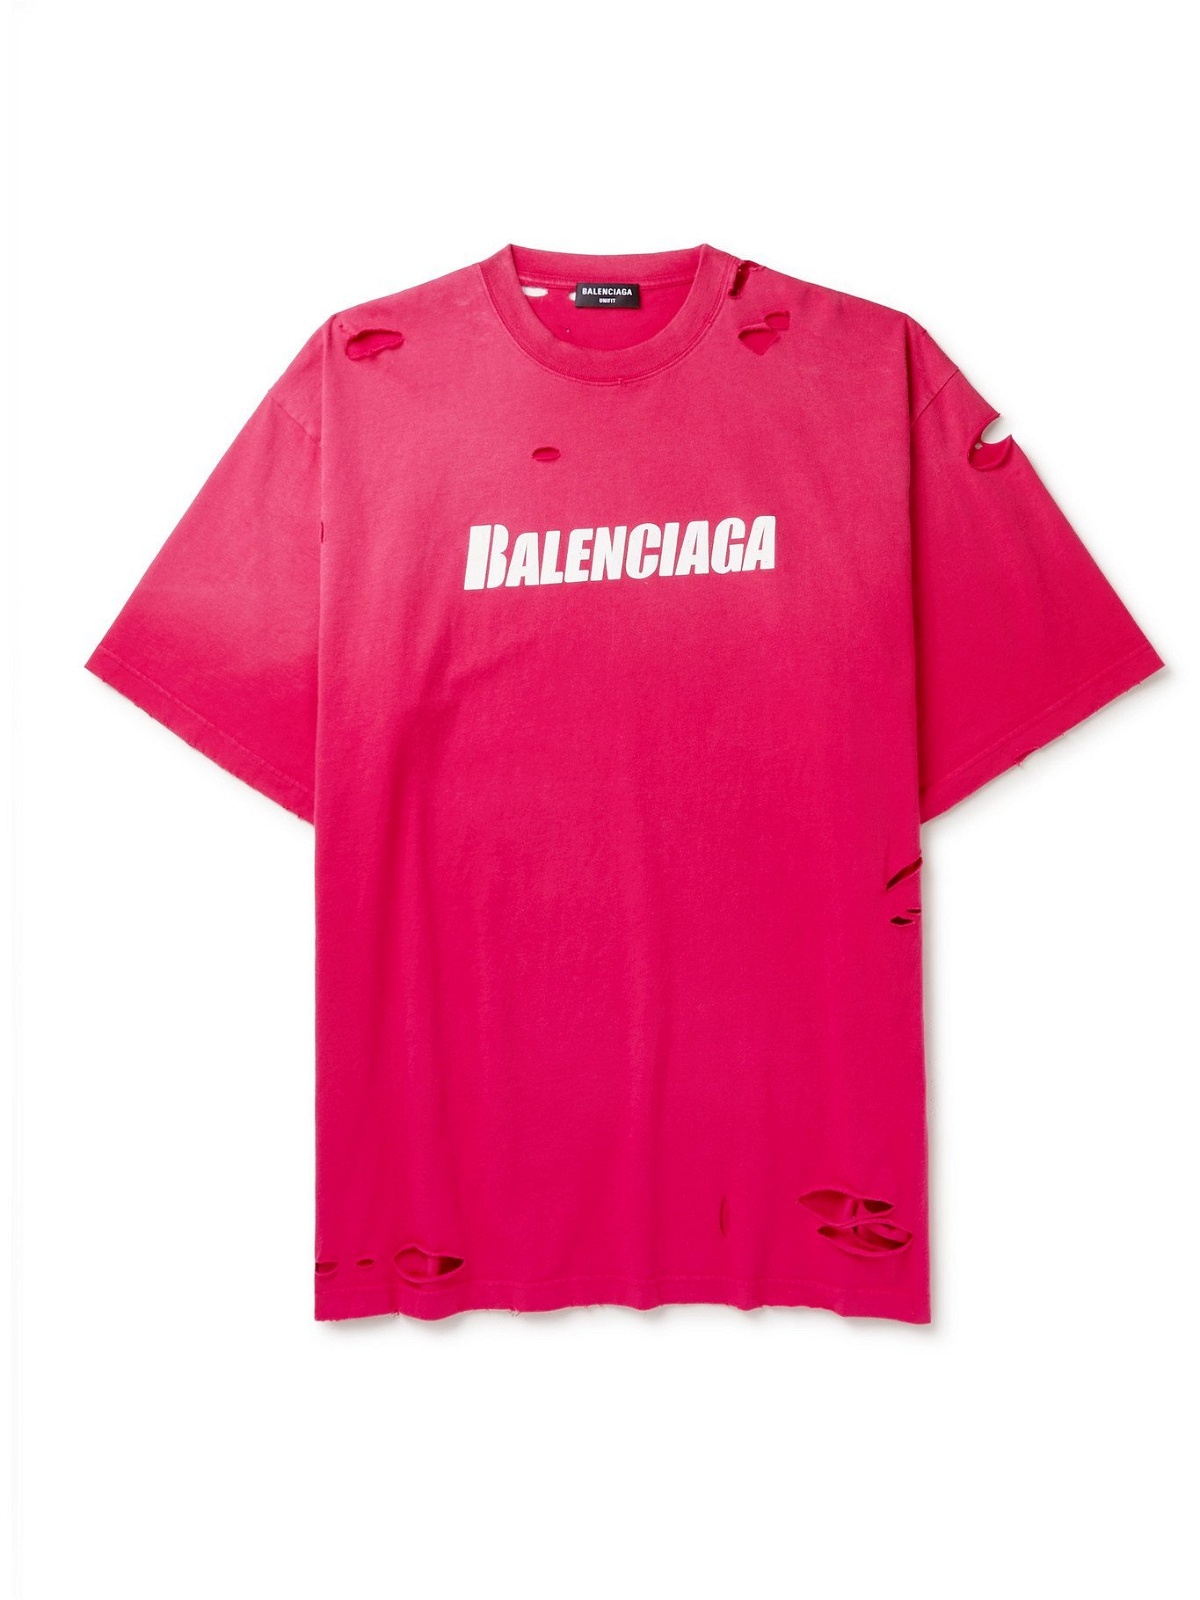 Chi tiết với hơn 66 về balenciaga tshirt pink  cdgdbentreeduvn